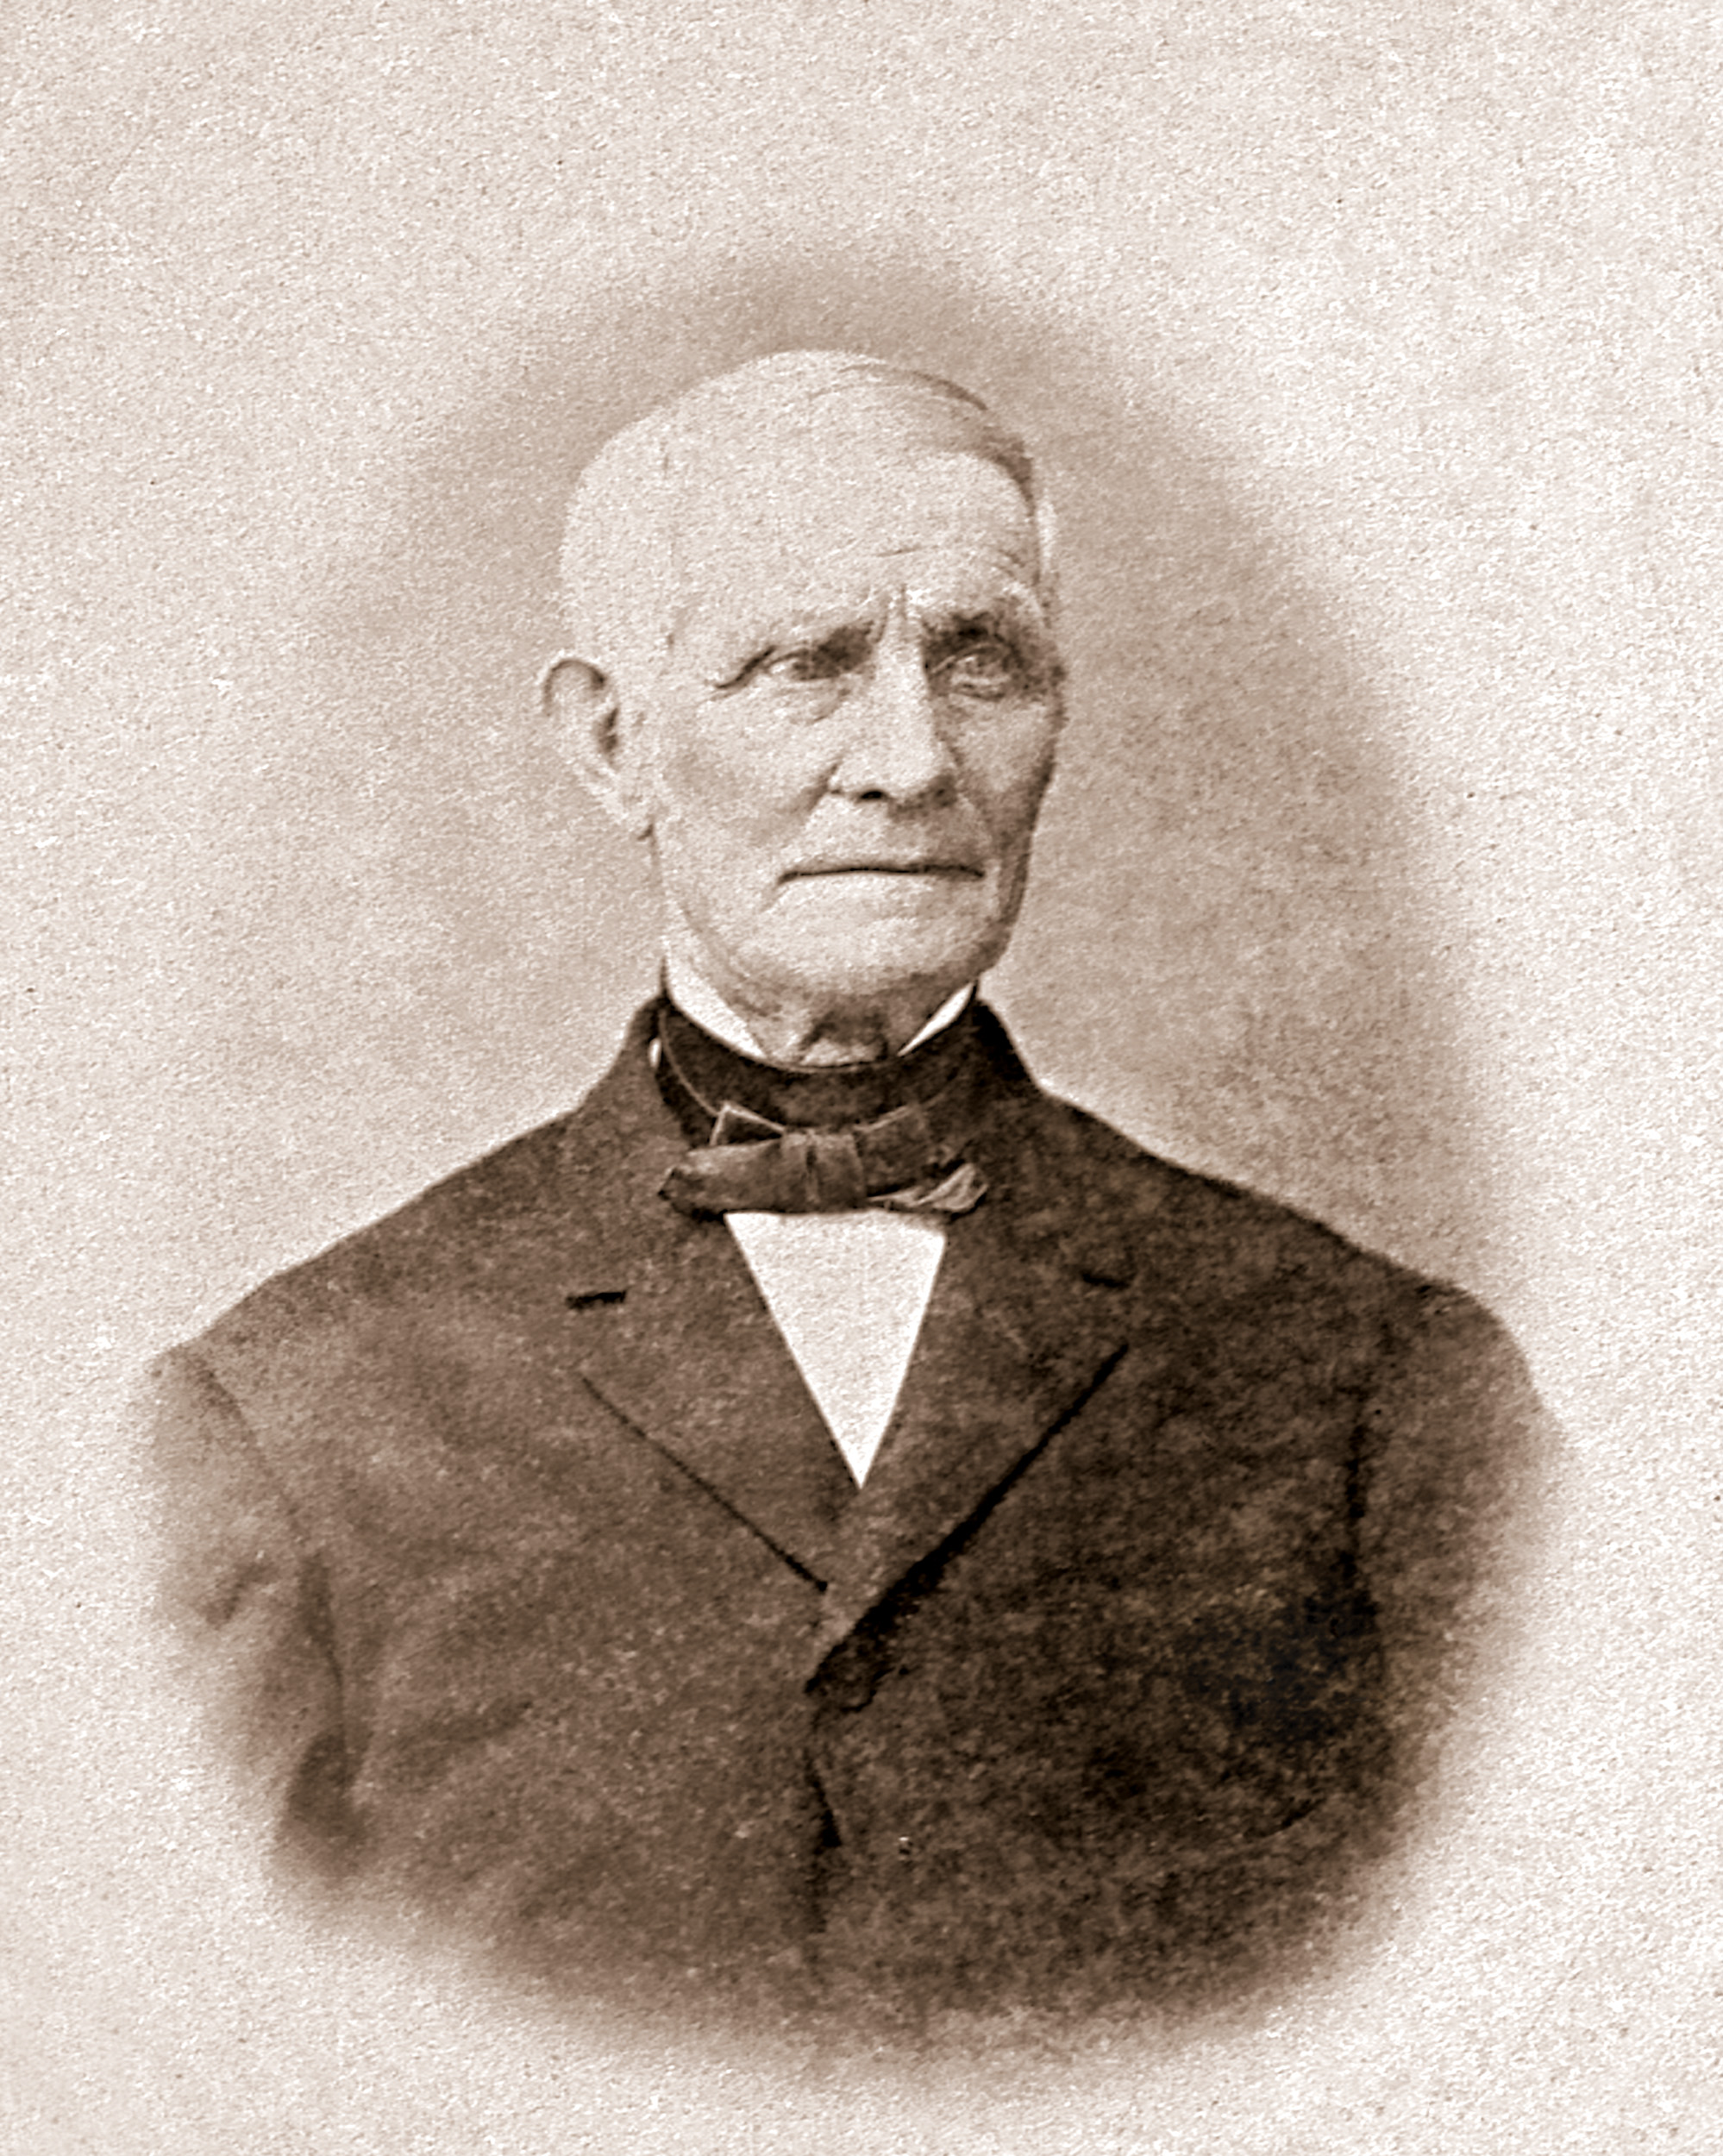 John Jacques Sr. Portrait